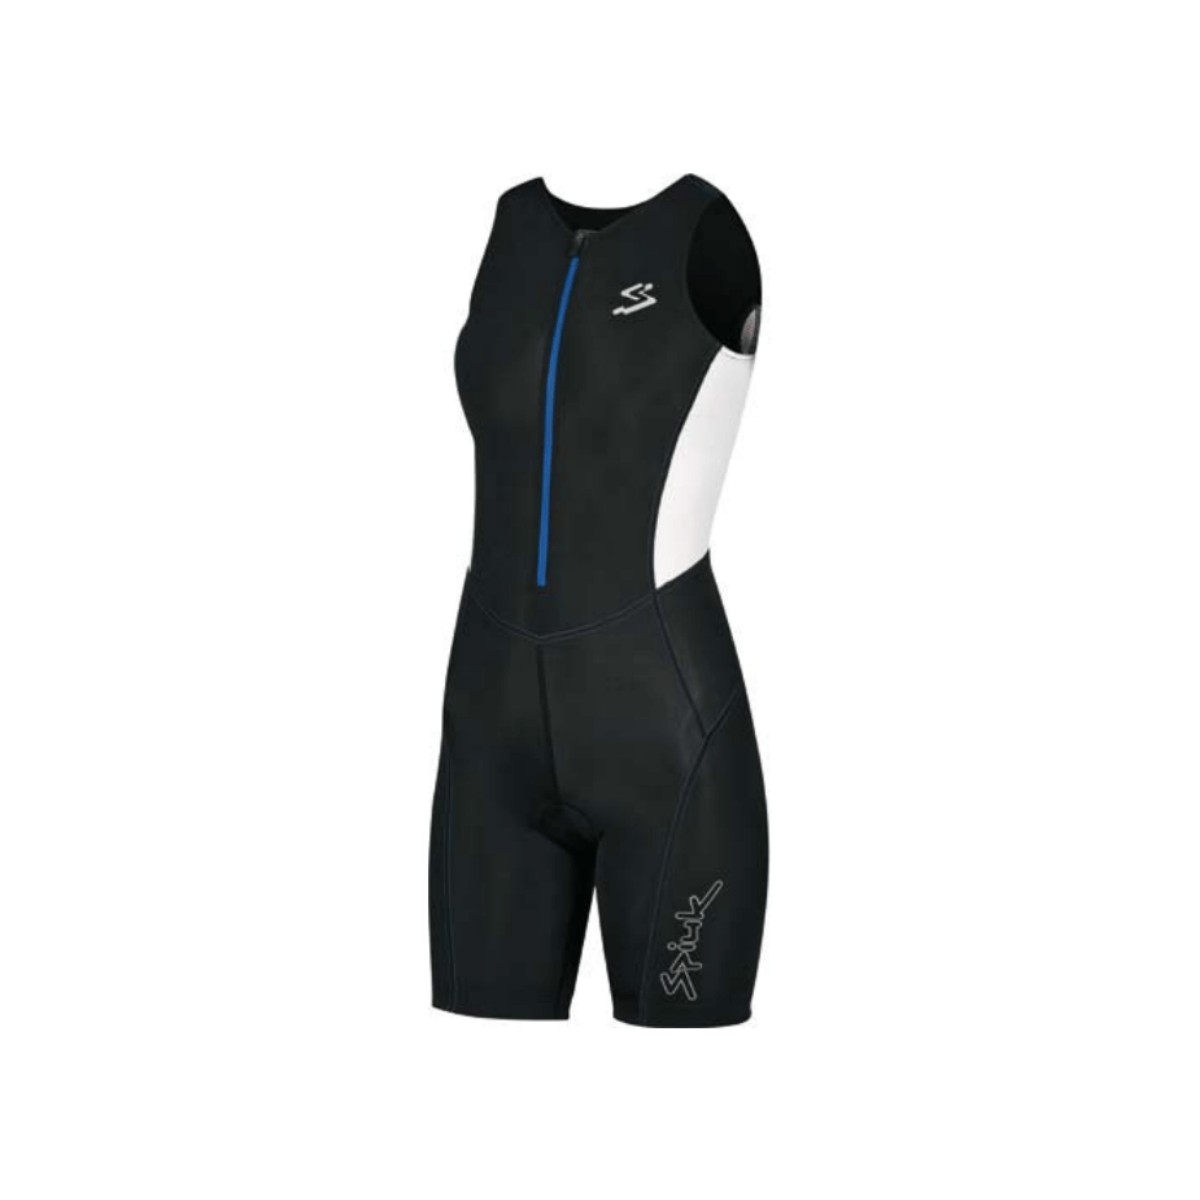 Spiuk Women's Race Trisuit Black Blue, Size XS.